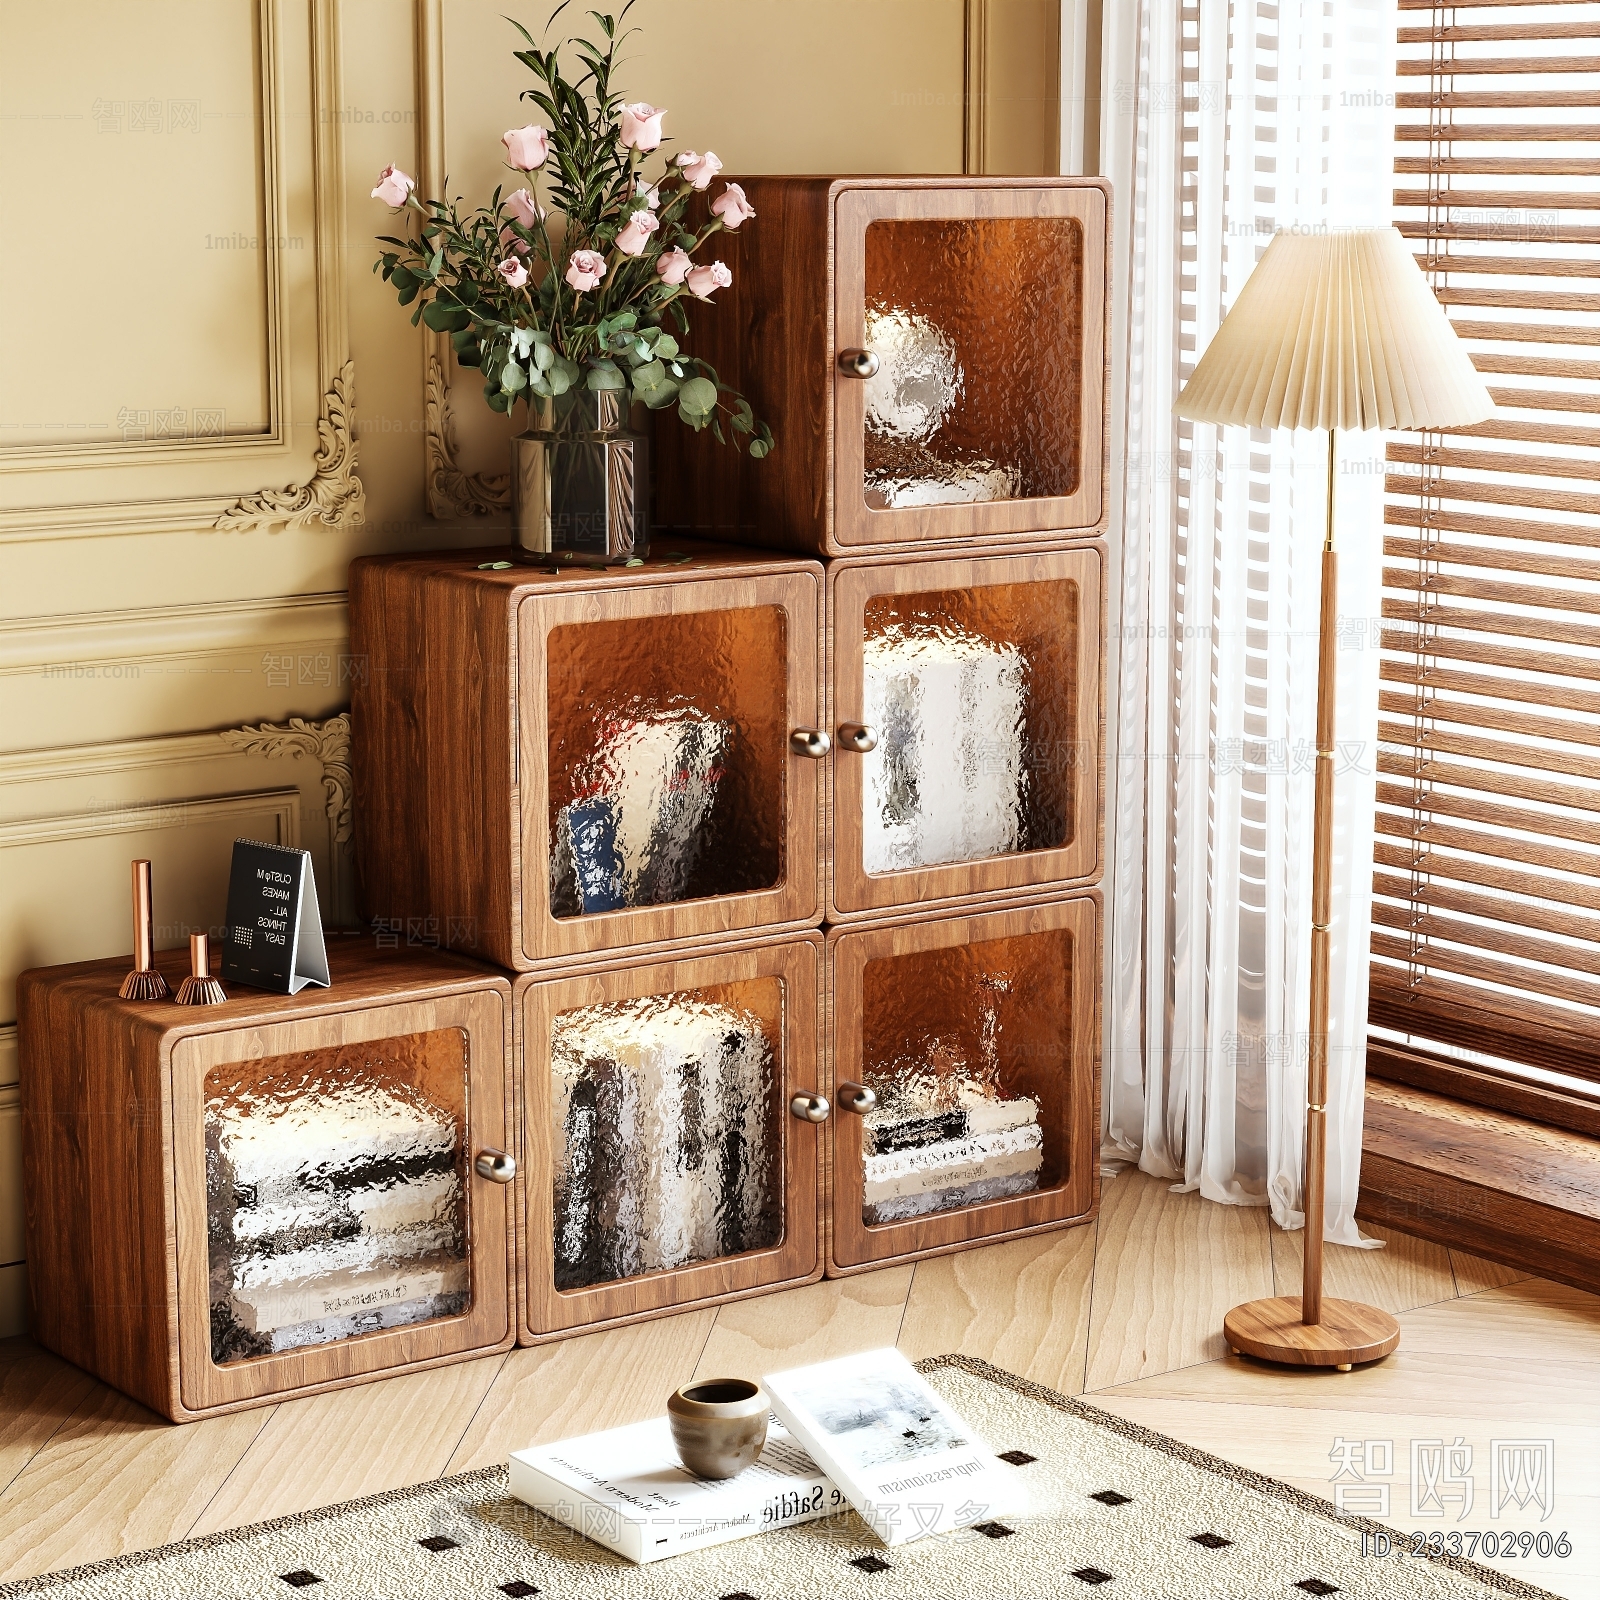 Retro Style Decorative Cabinet